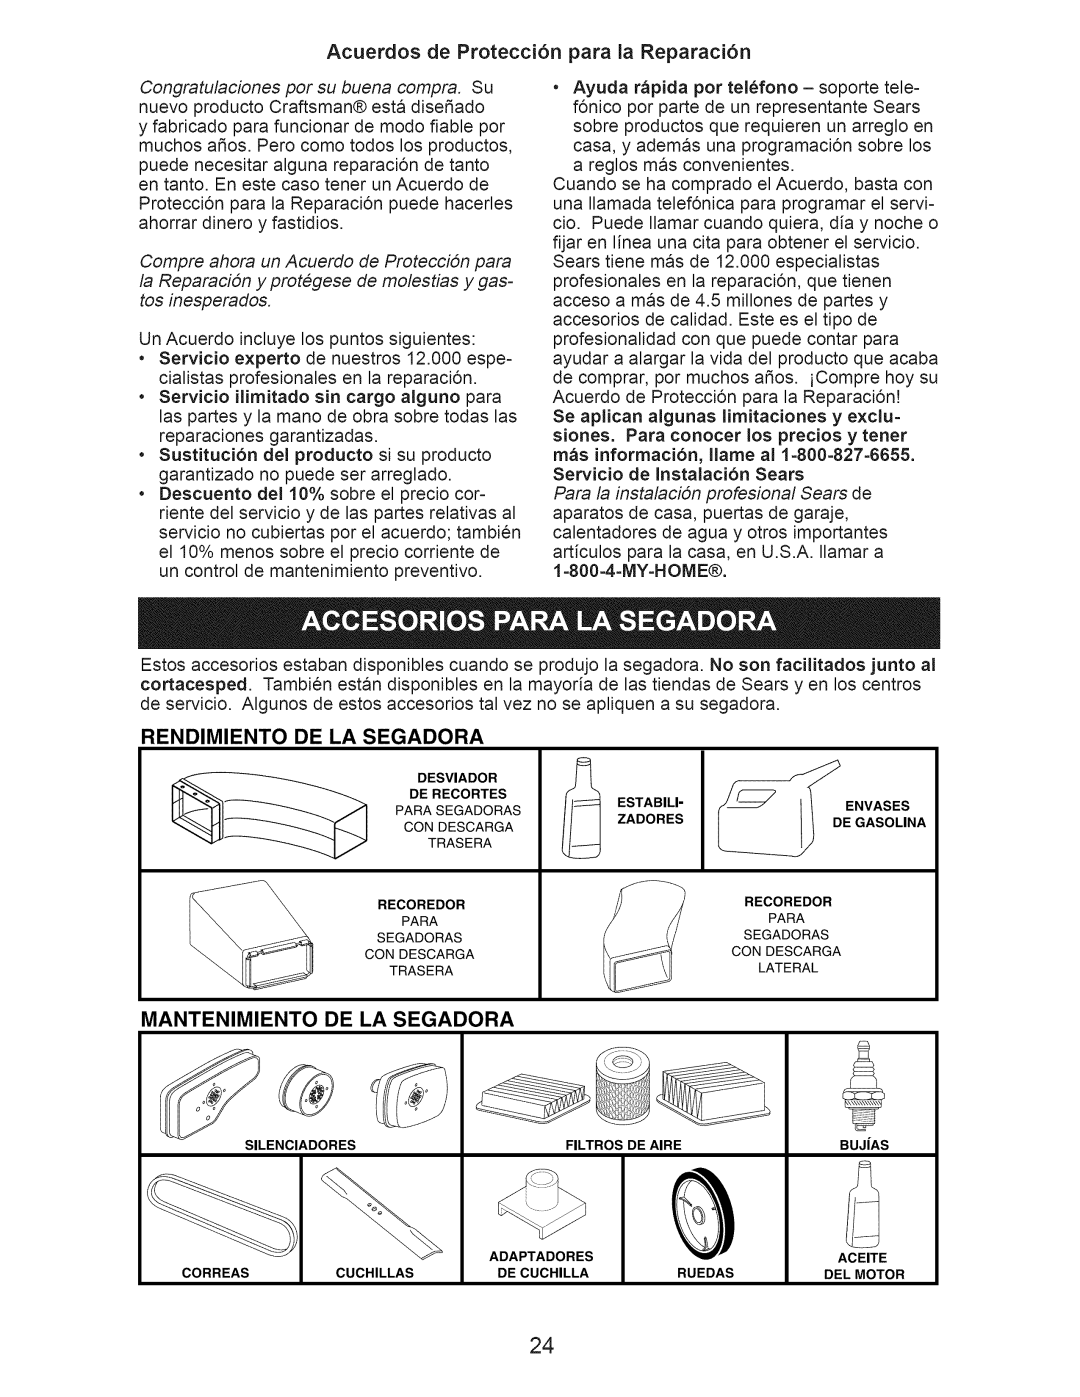 Craftsman 917.374365 Acuerdos de Protecci6n para la Reparaci6n, Rendimiento De La Segadora, Mantenimiento De La Segadora 